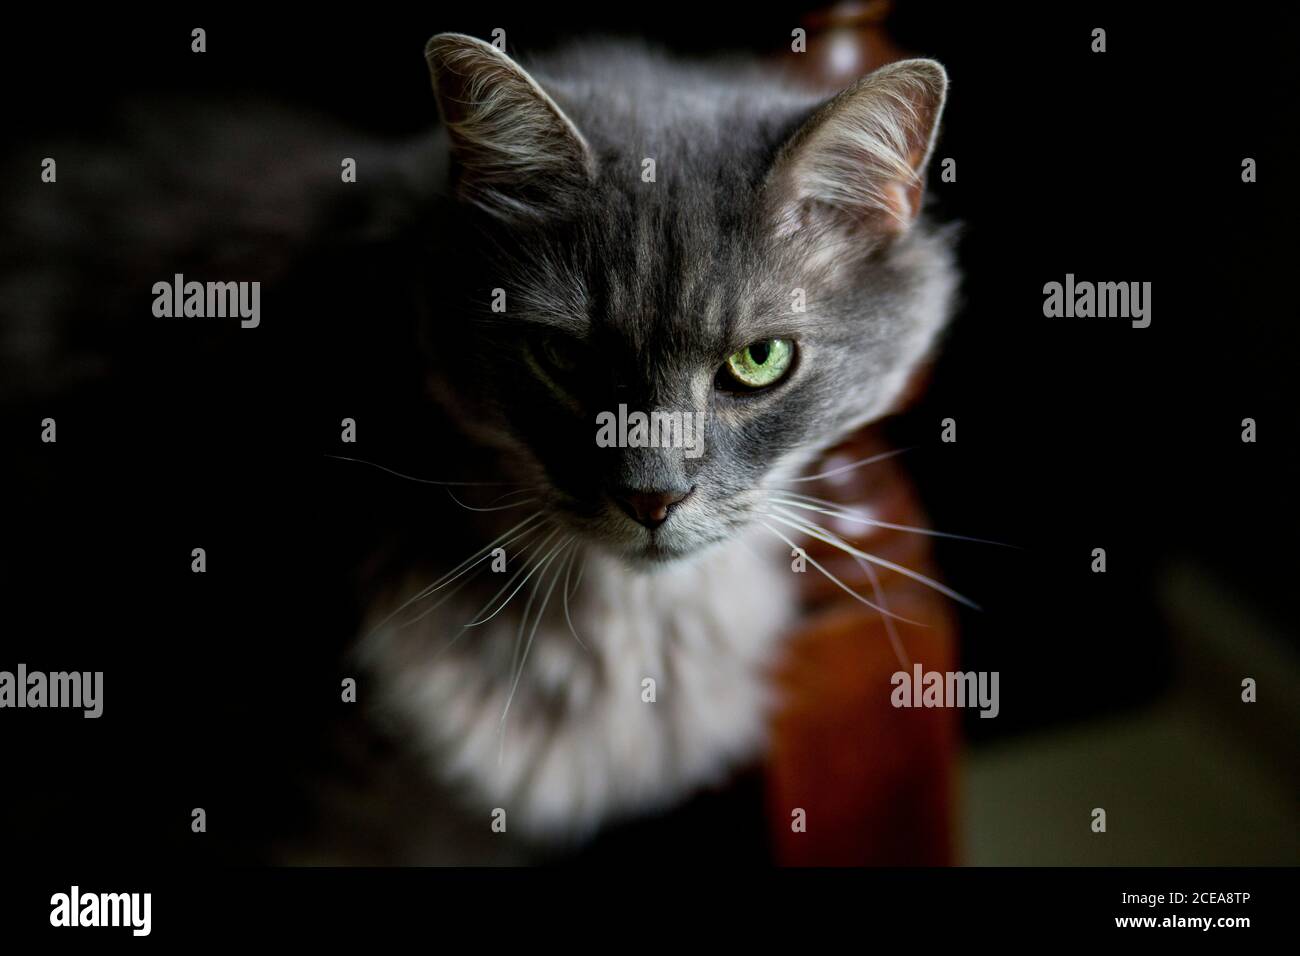 Graue flauschige Katze mit intensivem Blick in Halblicht, grünes Auge starrt direkt auf den Betrachter Stockfoto